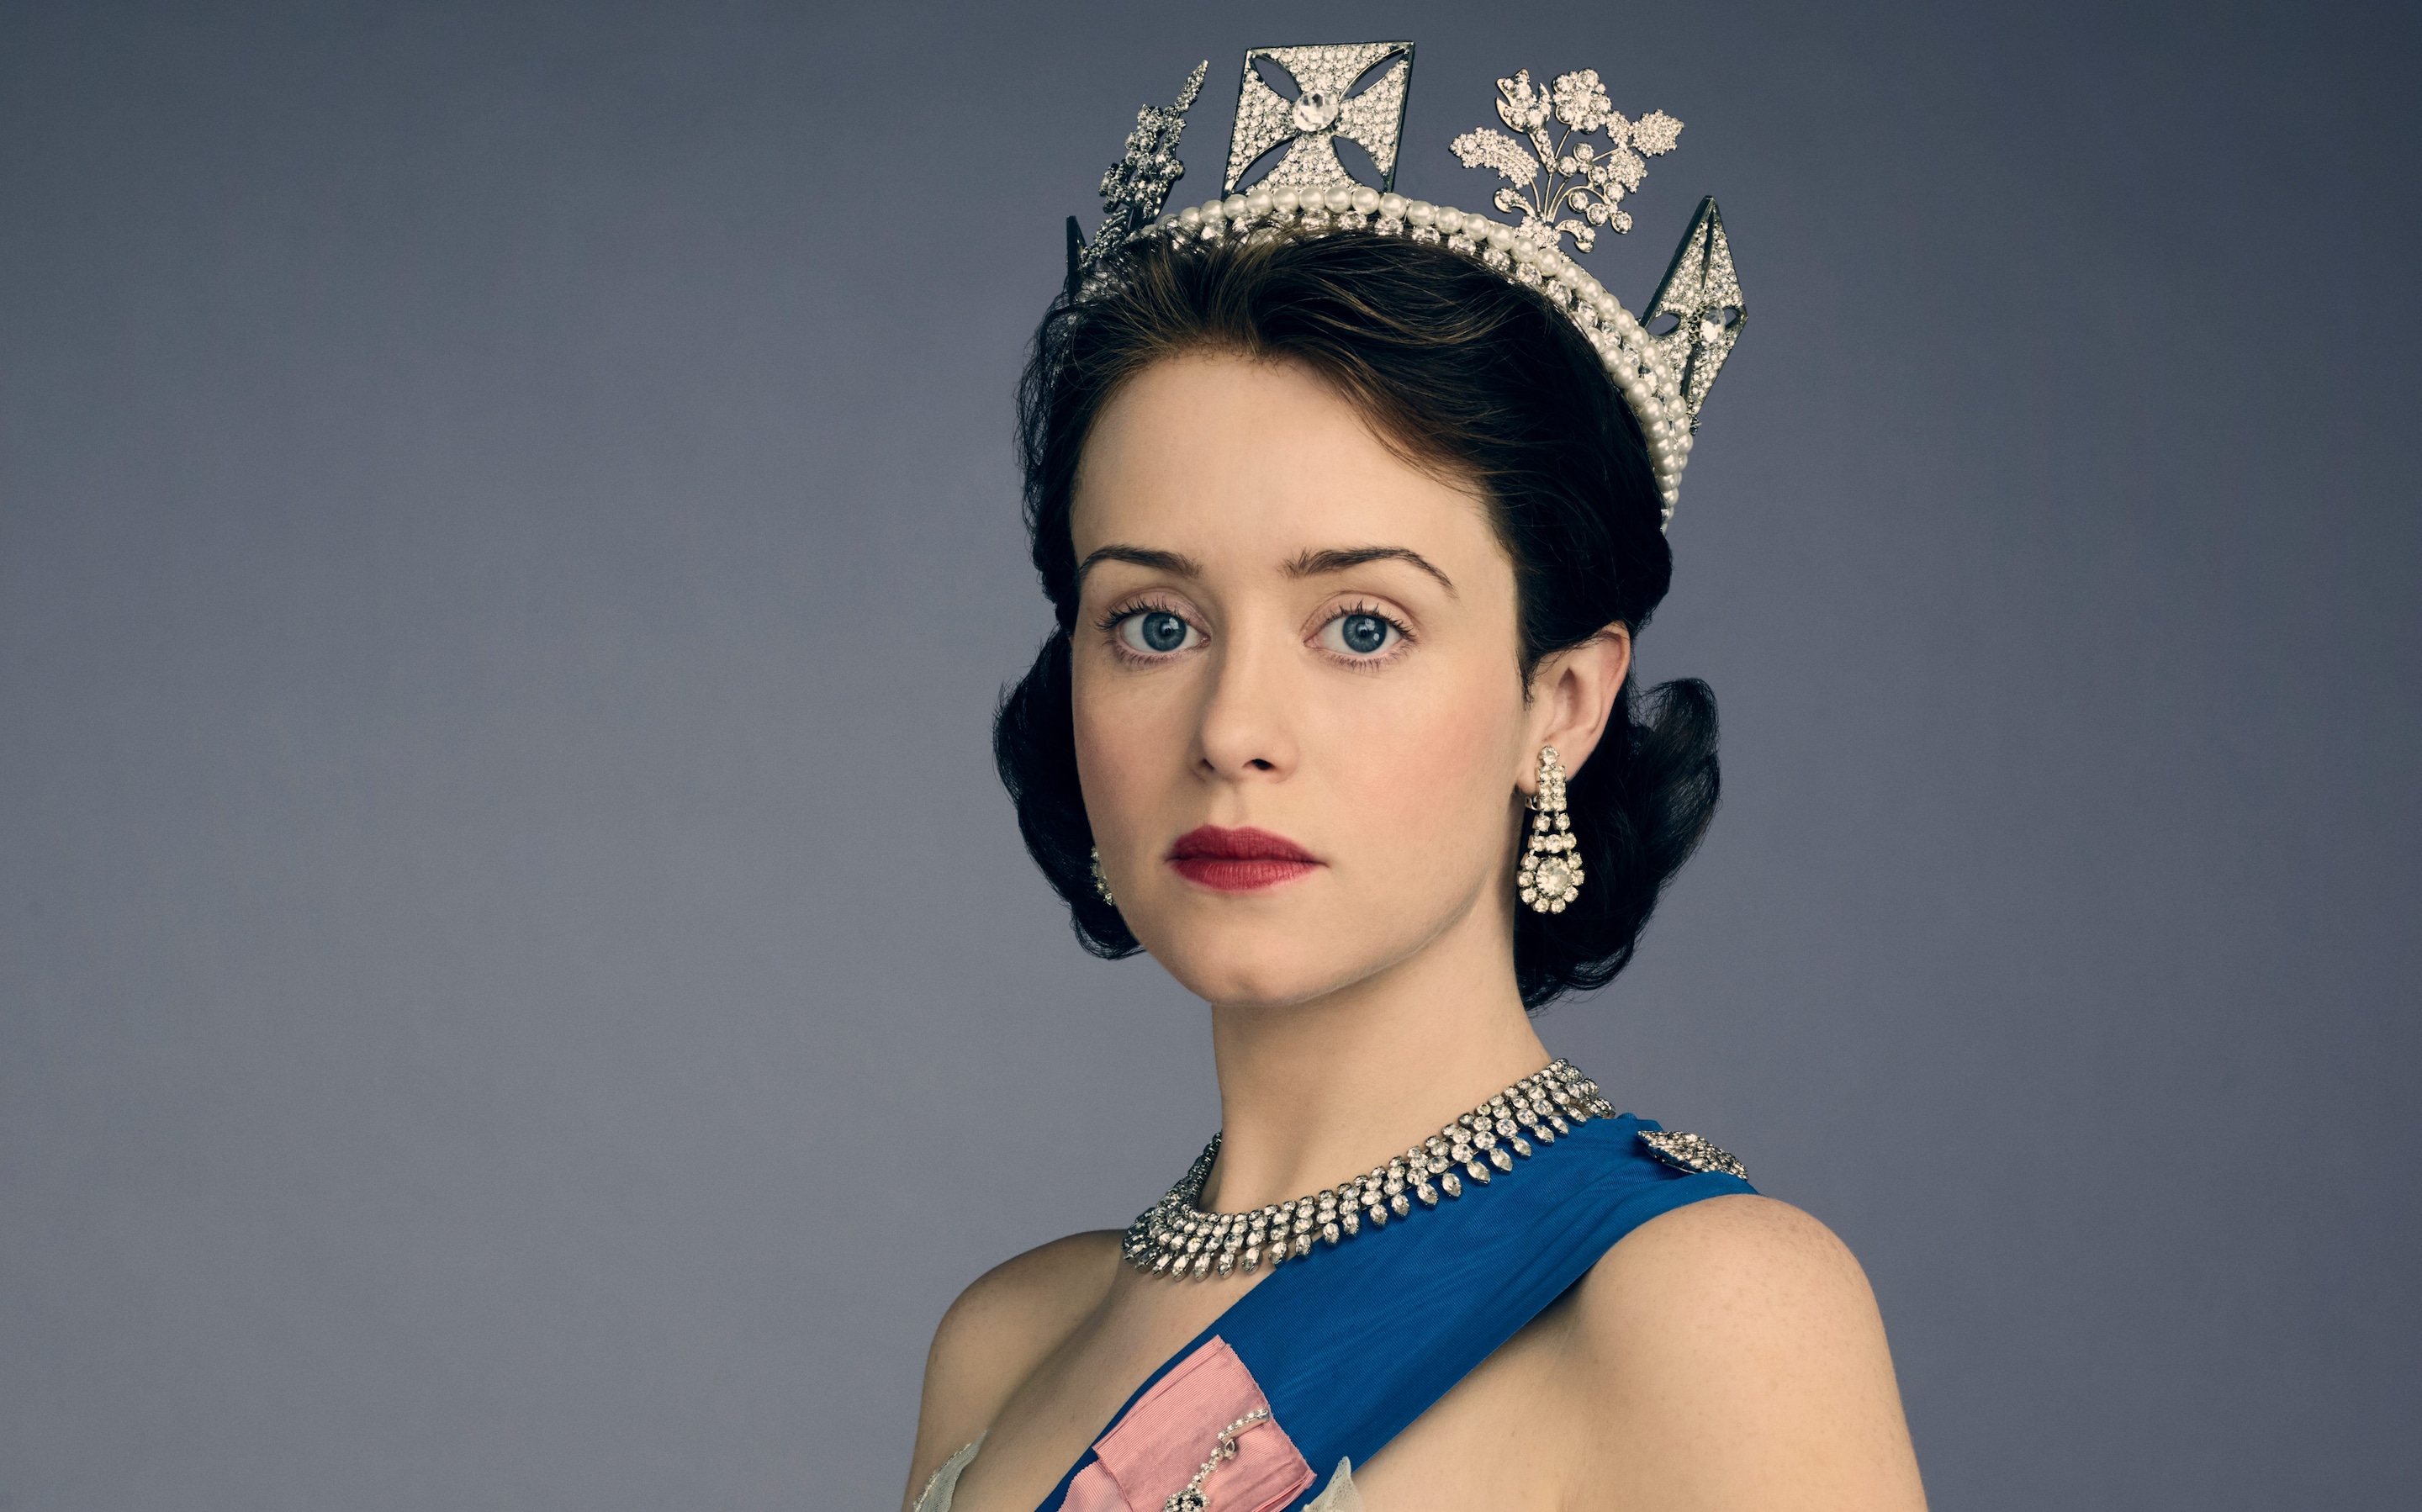 Просмотры «Короны» на Netflix выросли в несколько раз после смерти Елизаветы II